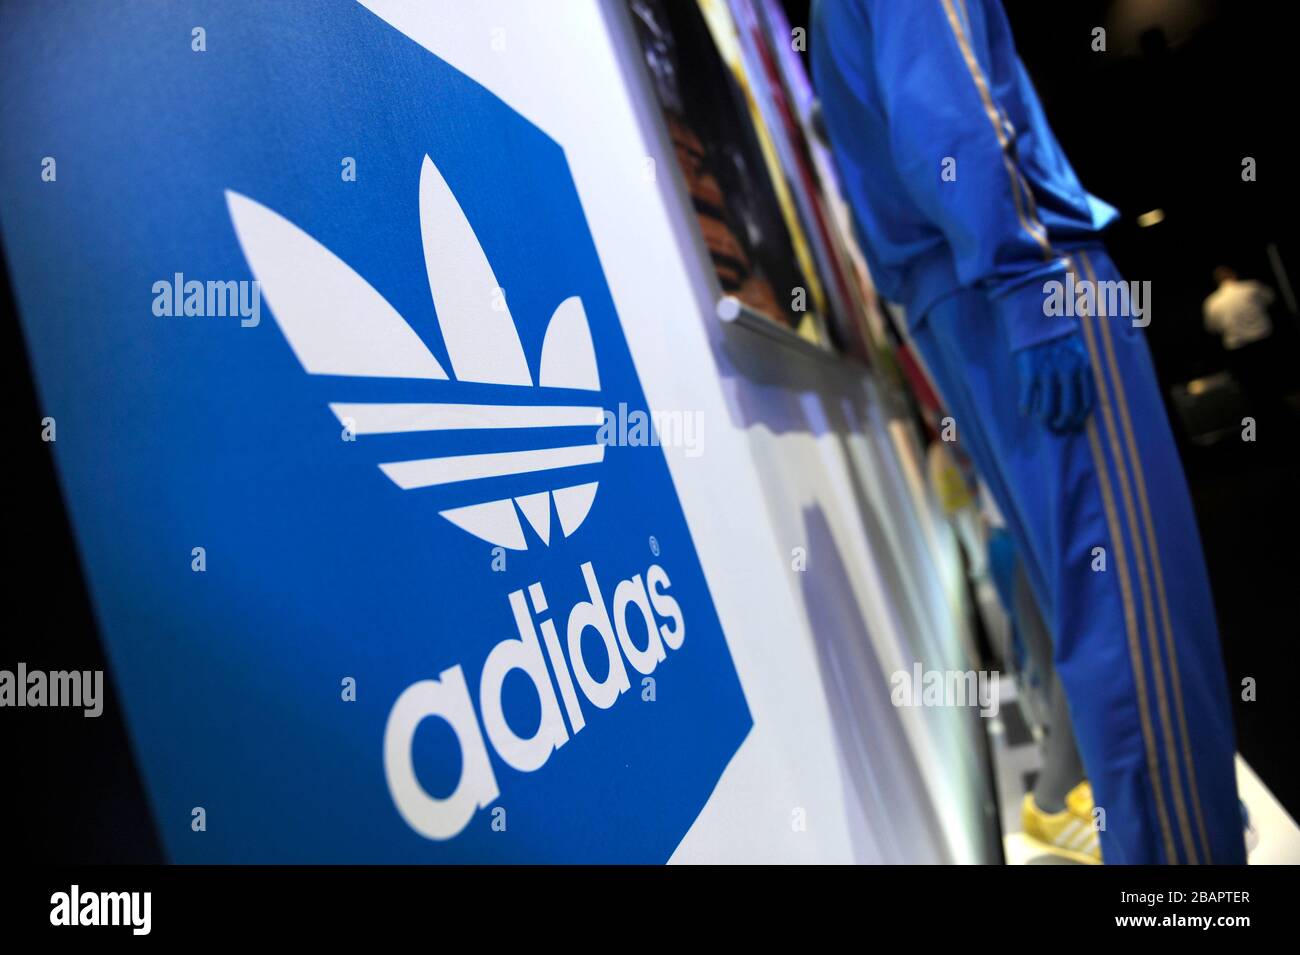 Herzogenaurach, Alemania. 29 de marzo de 2020. Adidas no quiere pagar  rentas en la crisis de Corona. Foto de archivo; LOGOTIPO de Adidas en una  tienda original, rueda de prensa de balance